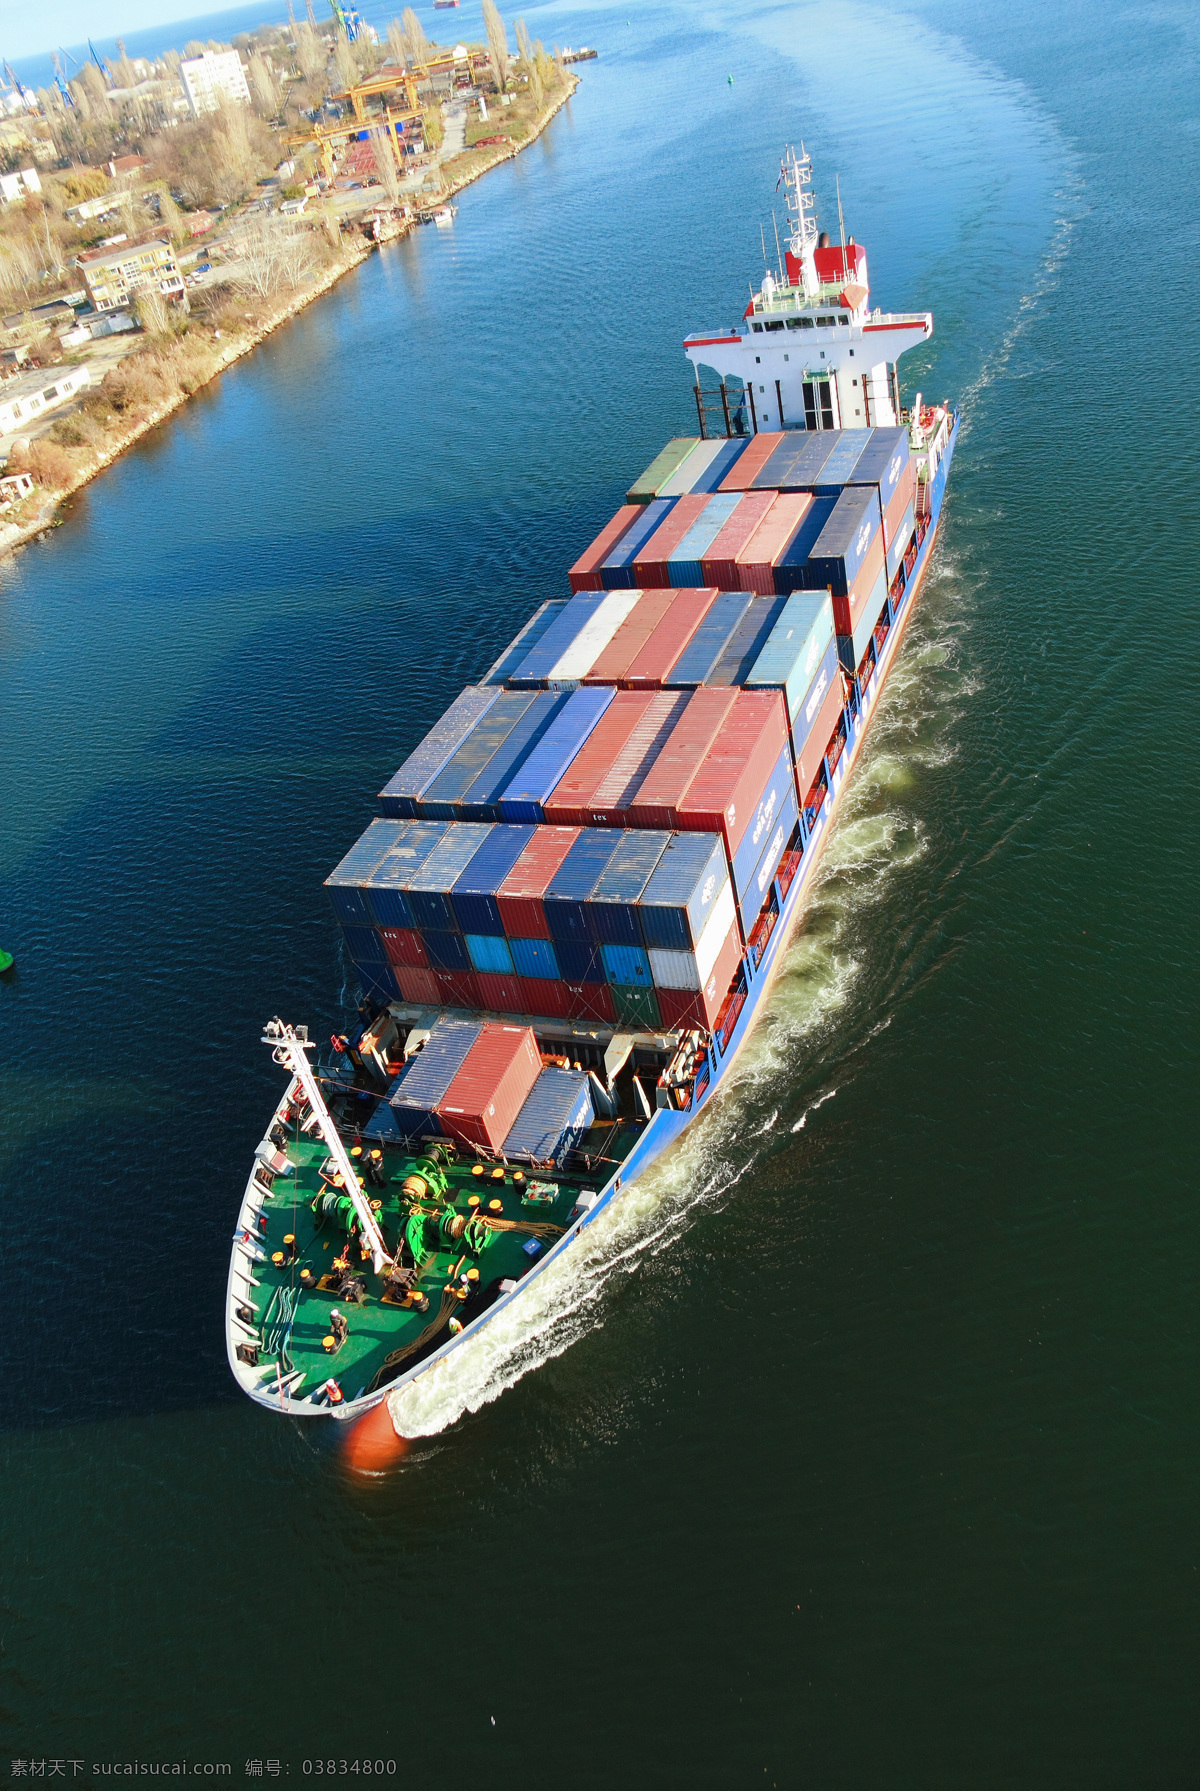 大海 中 货船 船 船只 海水 交通工具 水上运输 货物 汽车图片 现代科技